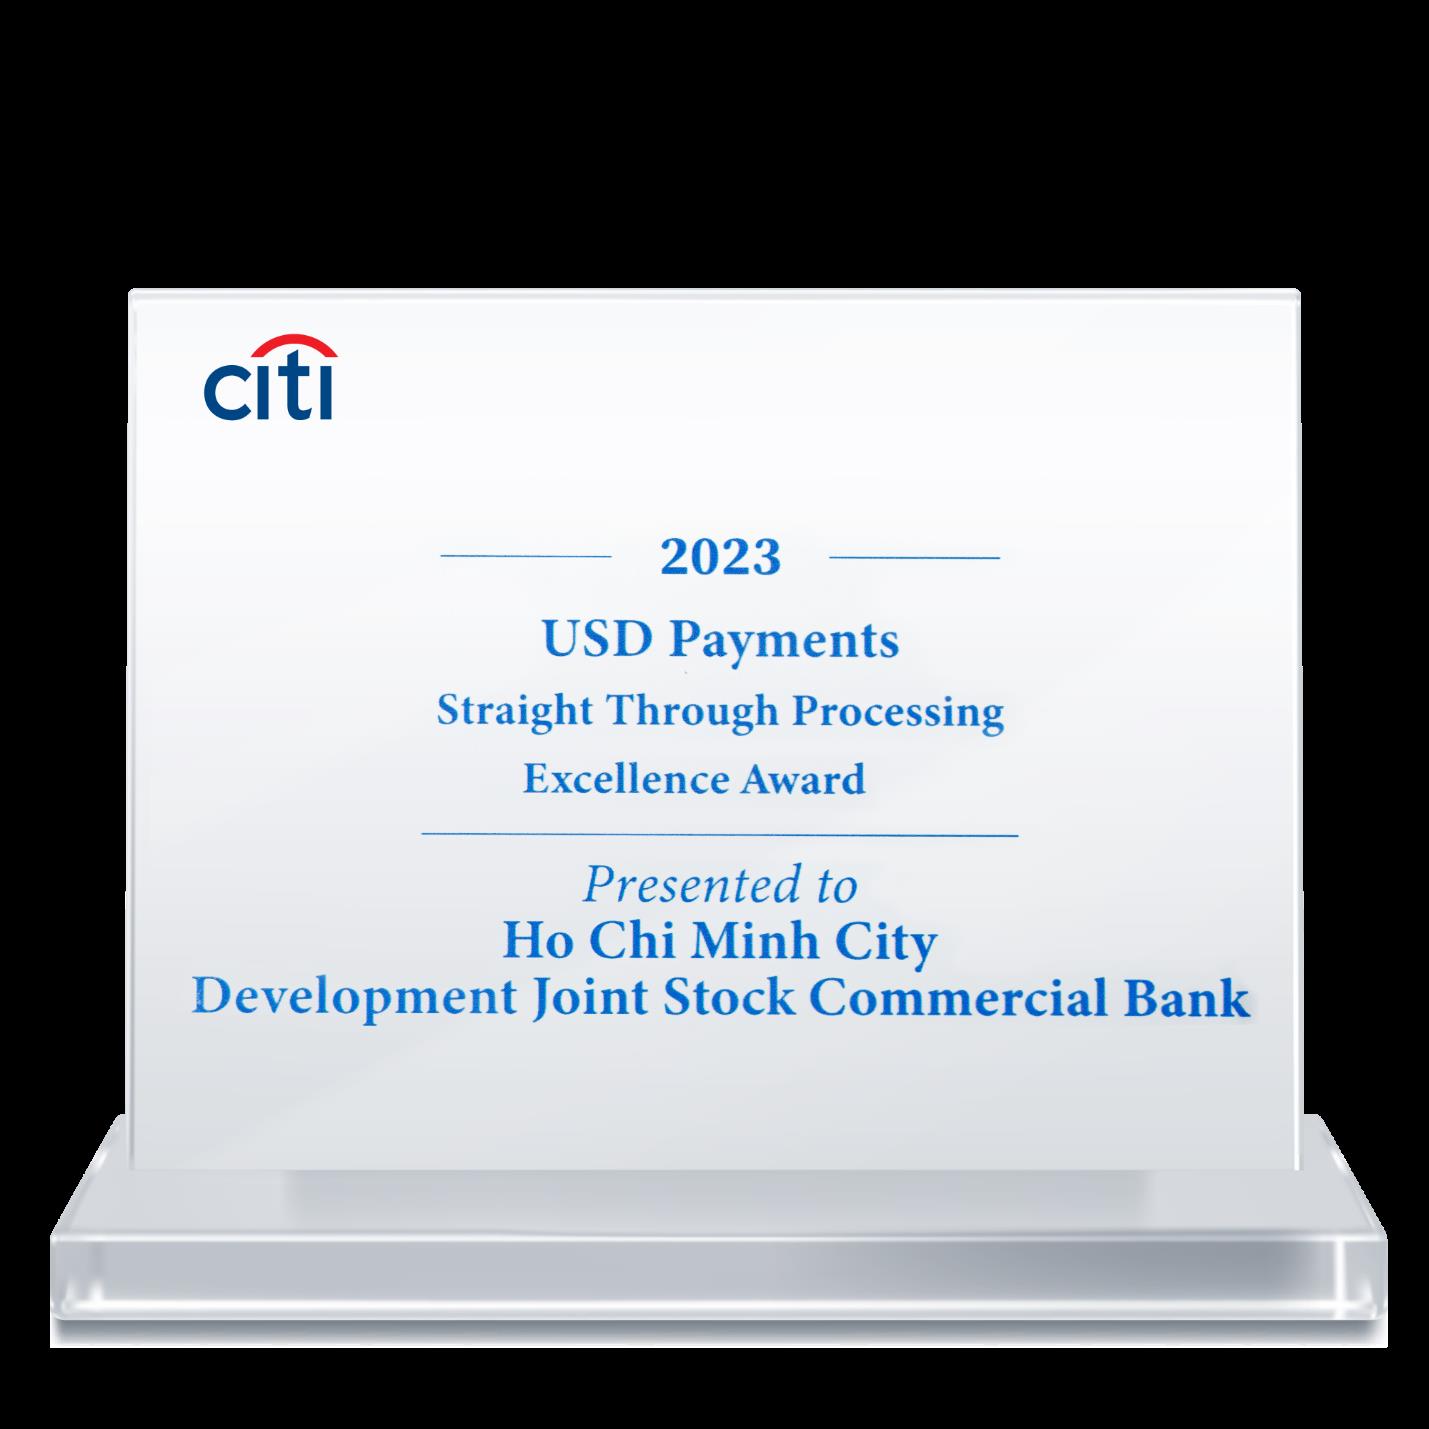 HDBank nhận “Giải thưởng chất lượng thanh toán quốc tế xuất sắc năm 2023” từ Citibank- Ảnh 2.